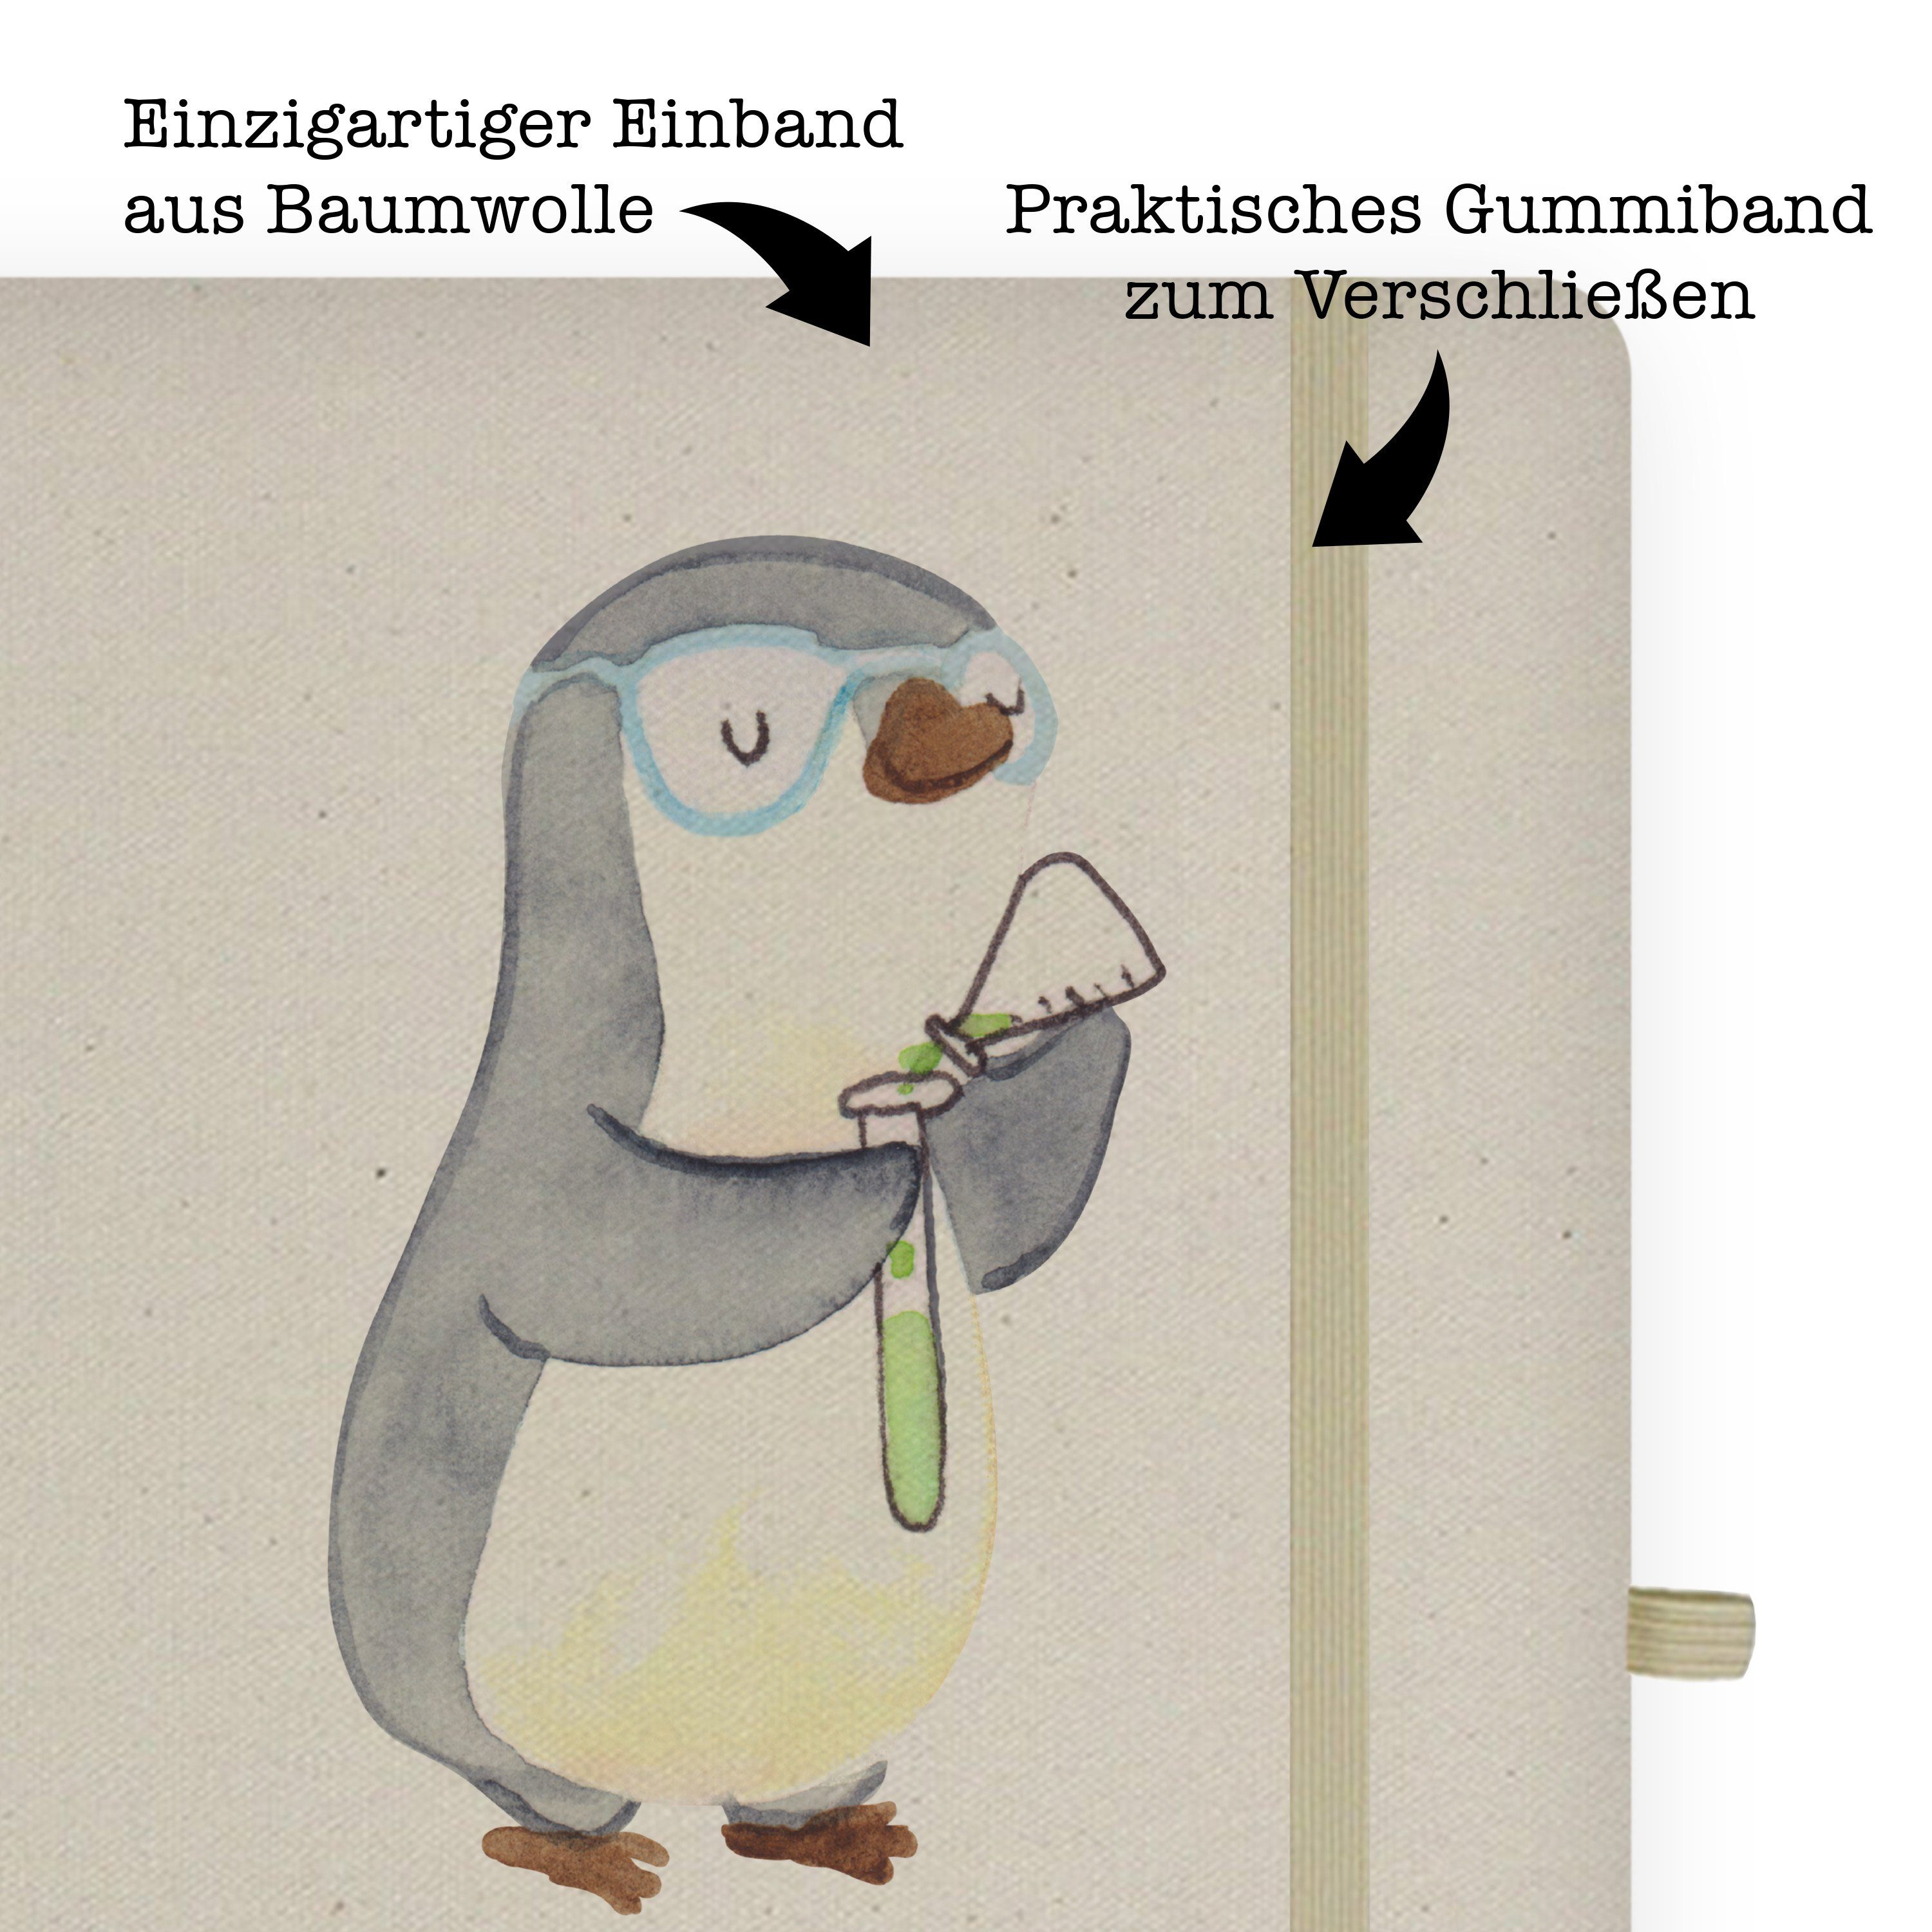 Panda Panda Notizbuch Re & mit Mrs. Tagebuch, Herz Mr. Mr. Chemielaborant Geschenk, & Danke, - - Transparent Mrs.